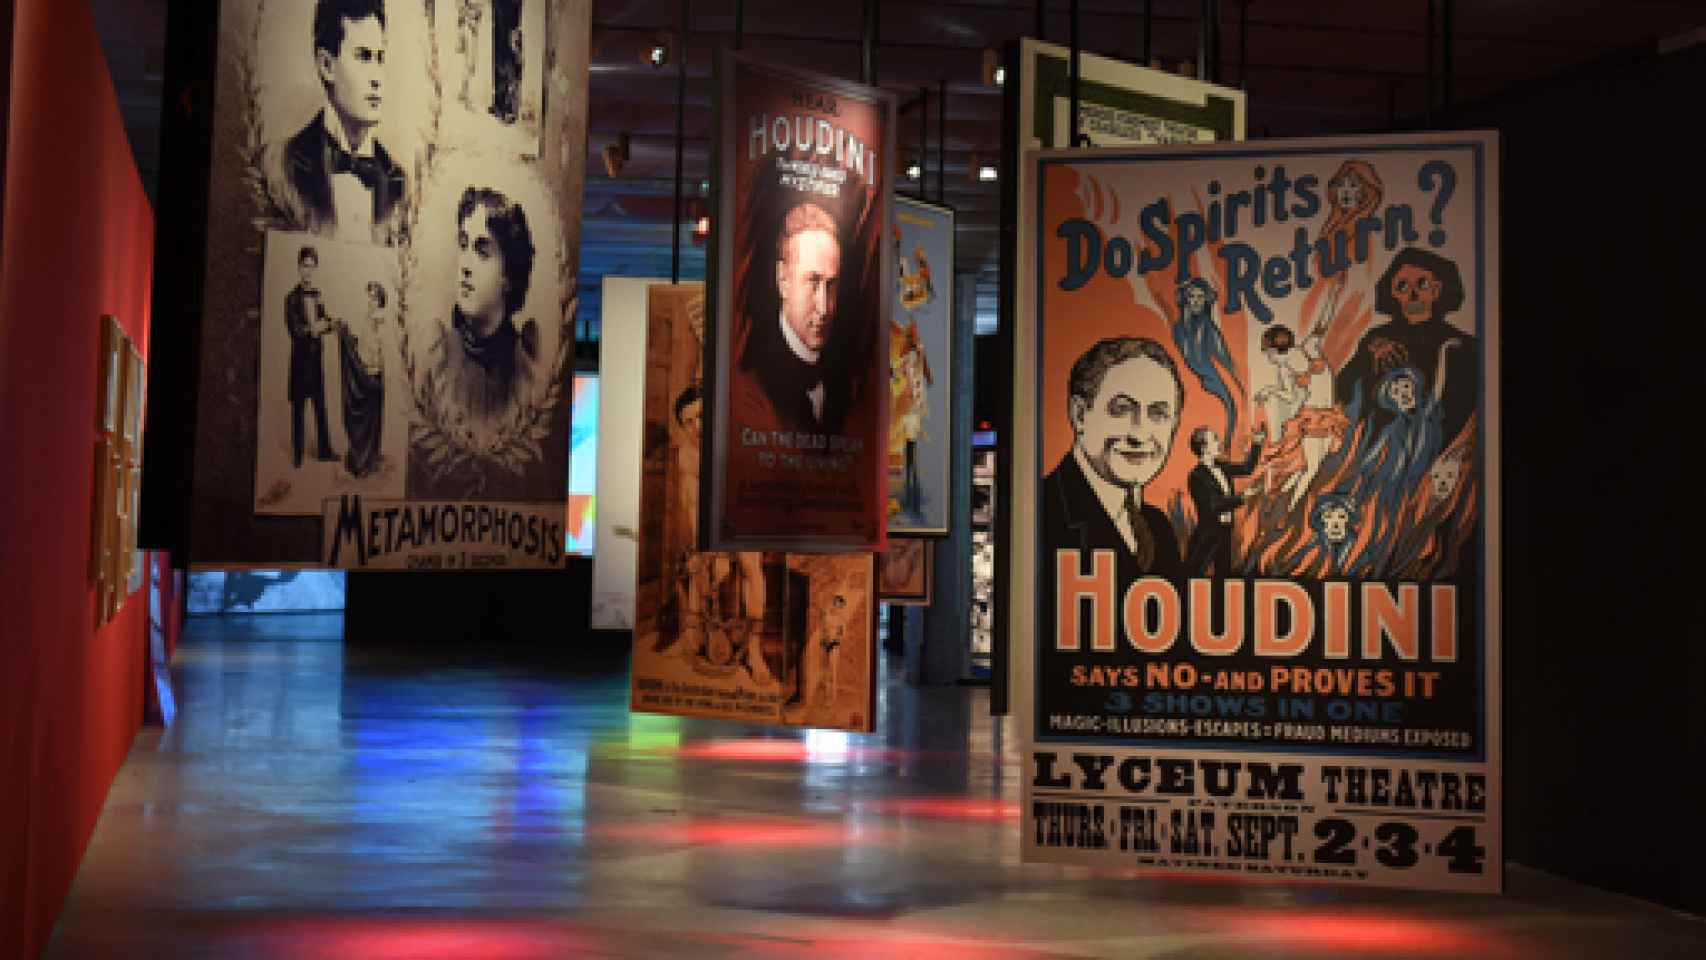 Image: Houdini y los cuerpos modernos